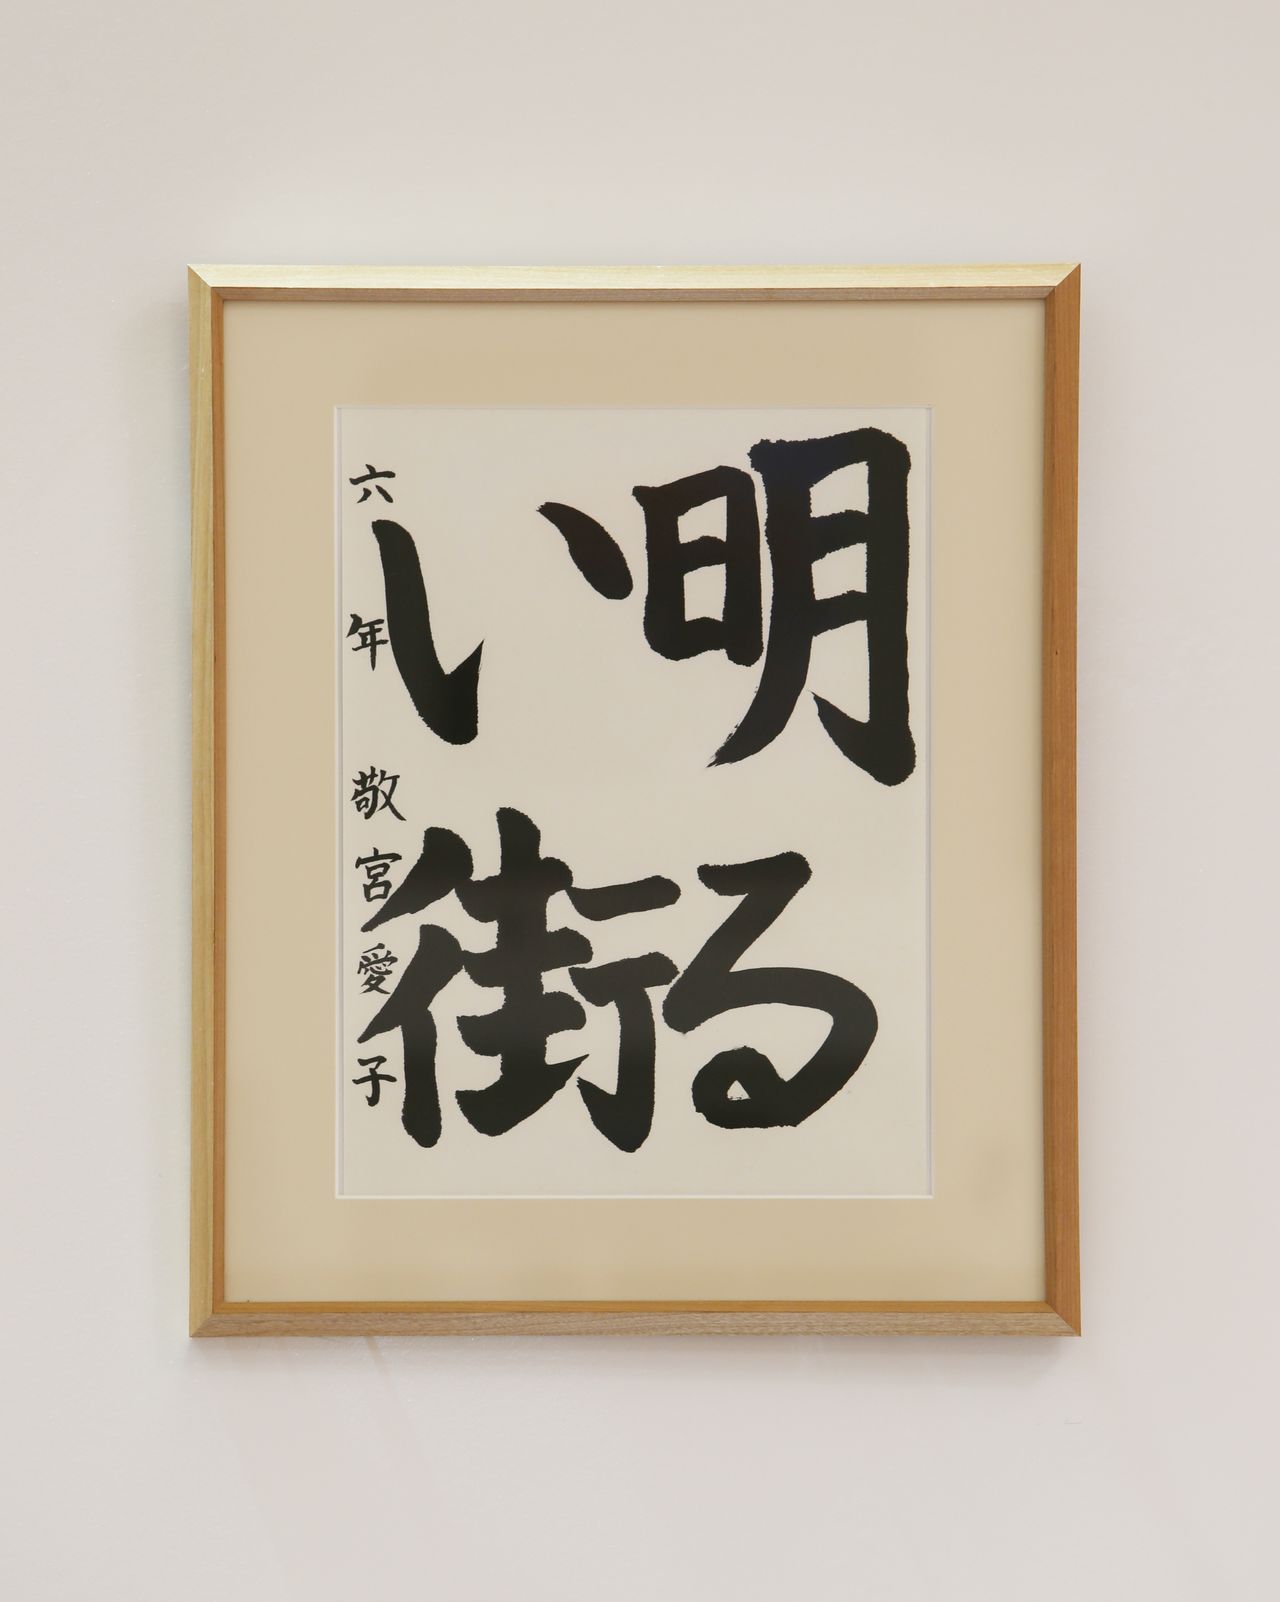 « Une ville joyeuse » (akarui machi), calligraphié par Aiko au Festival de la culture et de l’art organisé par l’Agence de la maison impériale en décembre 2013. (Jiji)